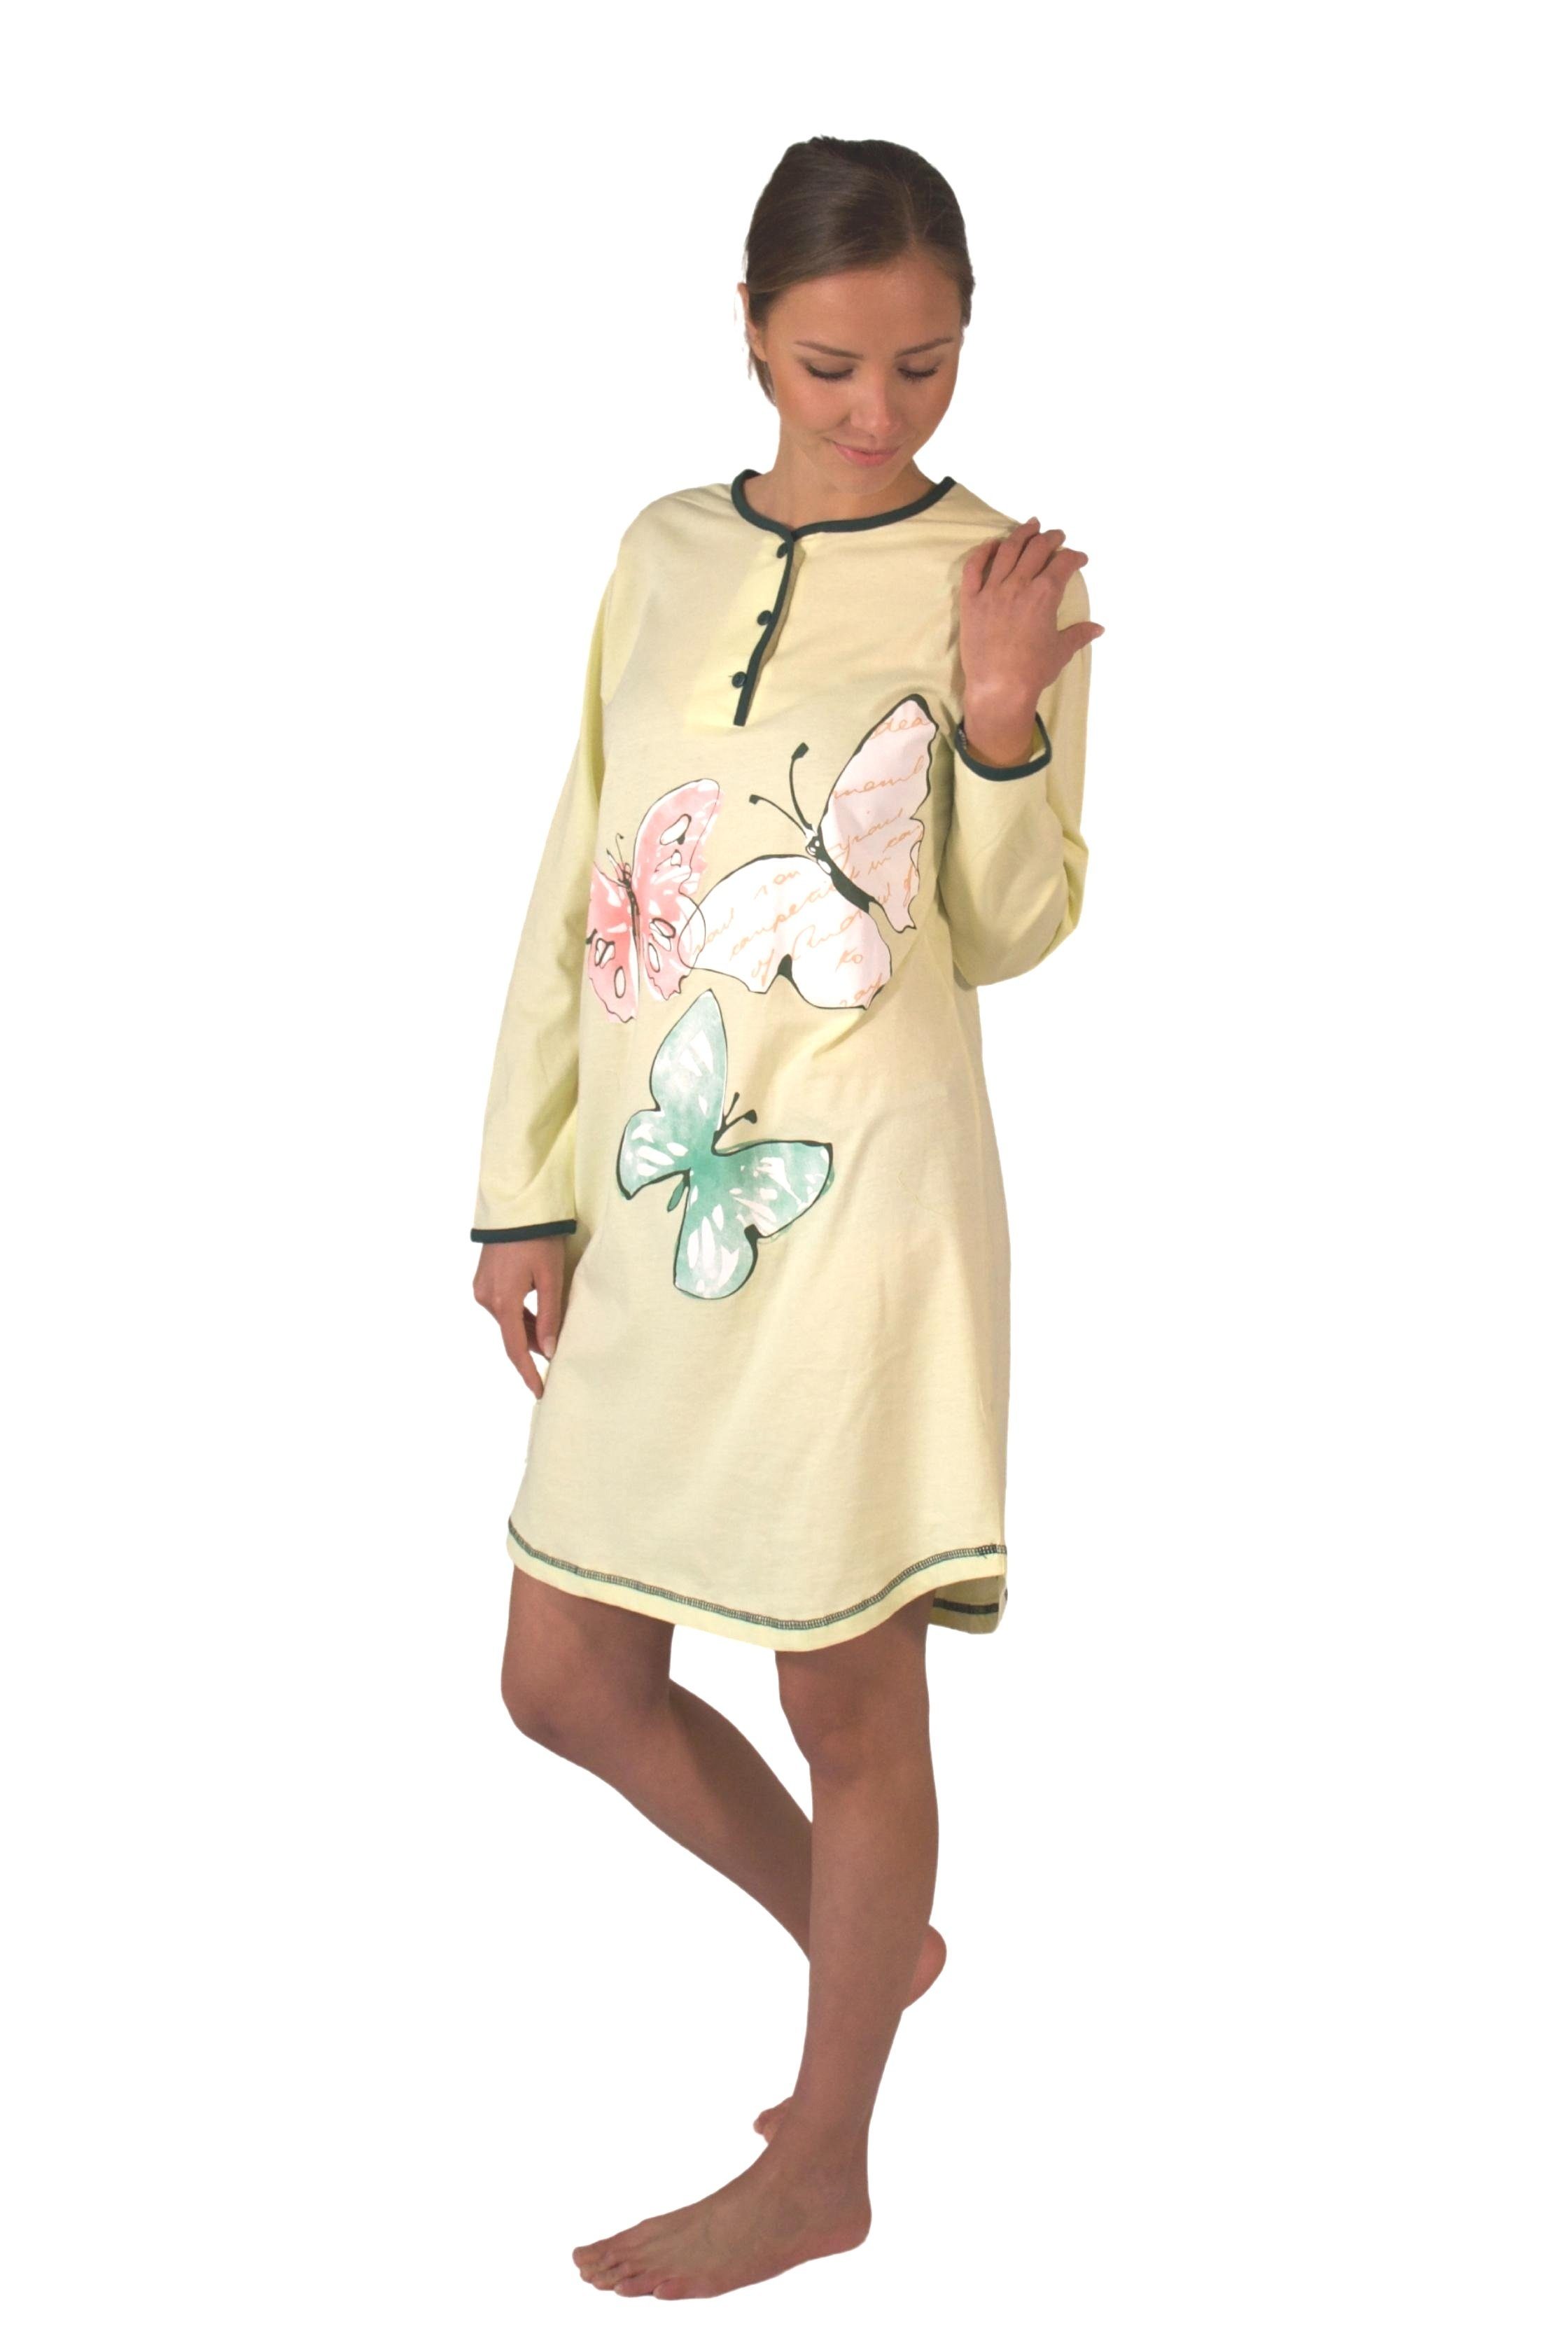 Consult-Tex Nachthemd Damen BaumwolleJersey Nachthemd DW720 bequem zu tragen mingrün